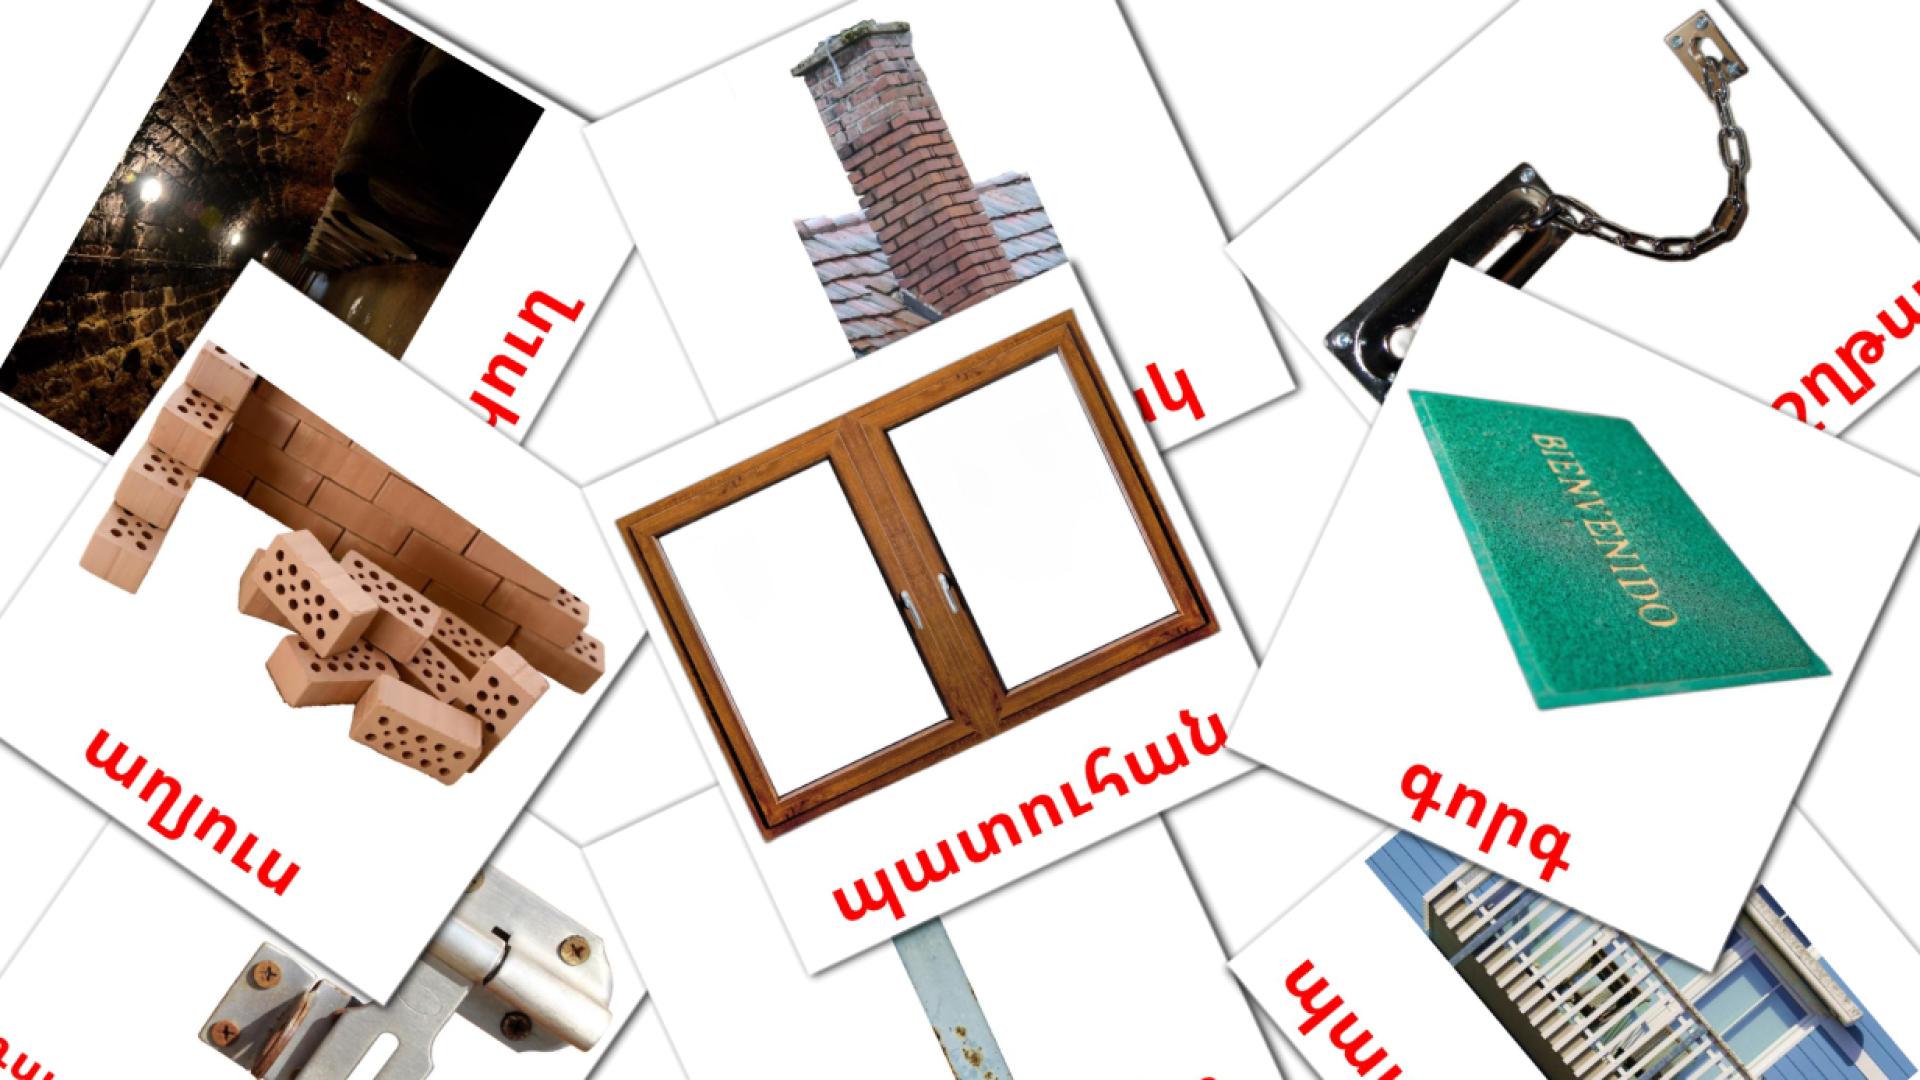 La casa - tarjetas de vocabulario en armenio